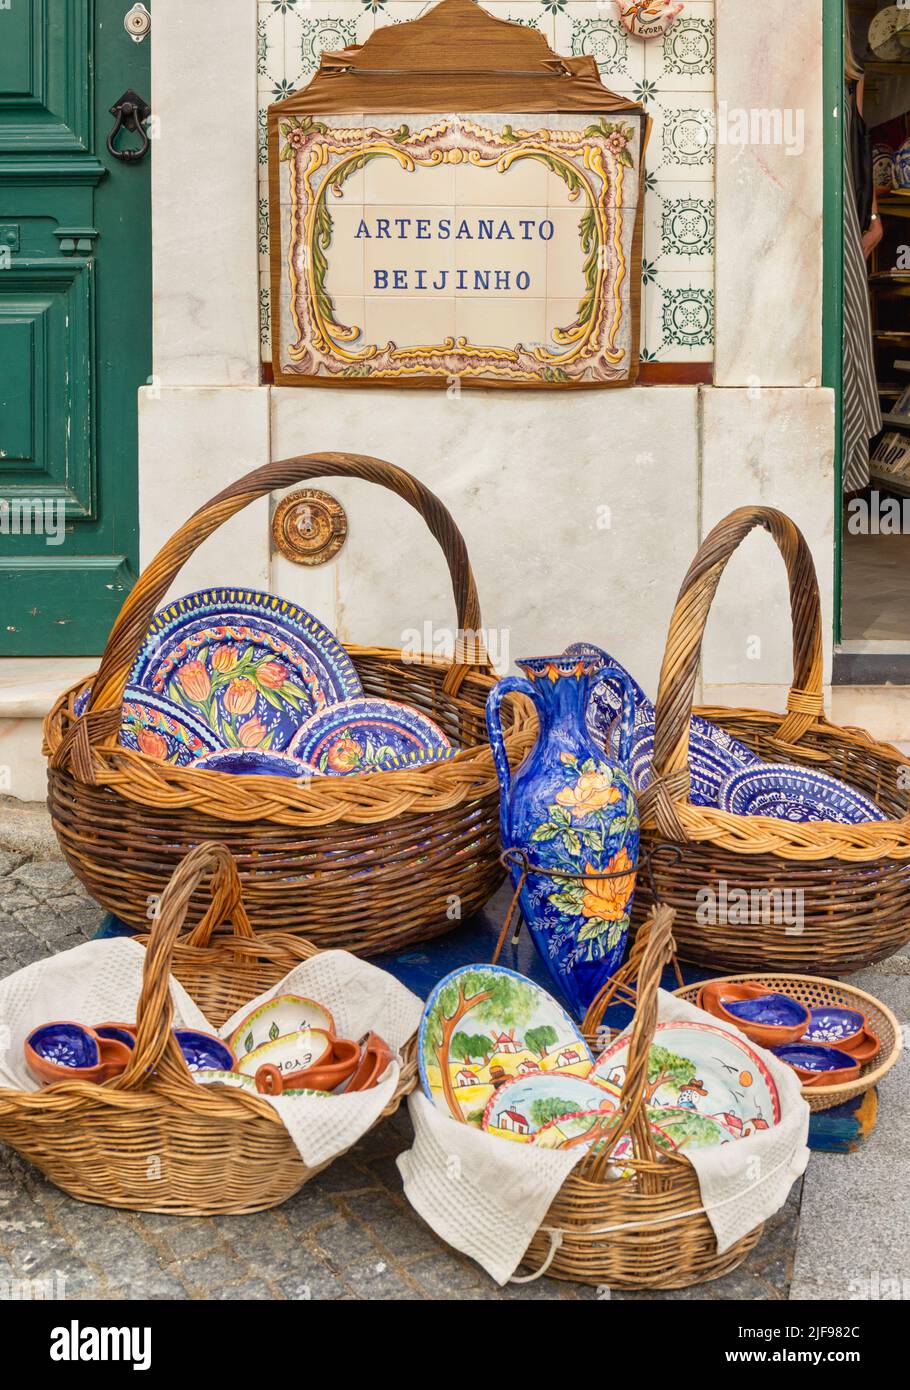 Evora, district d'Evora, Alentejo, Portugal. Paniers de souvenirs en céramique dans la rue à l'extérieur de la boutique Artesanato Beijinho. Evora est un patrimoine mondial de l'UNESCO S. Banque D'Images